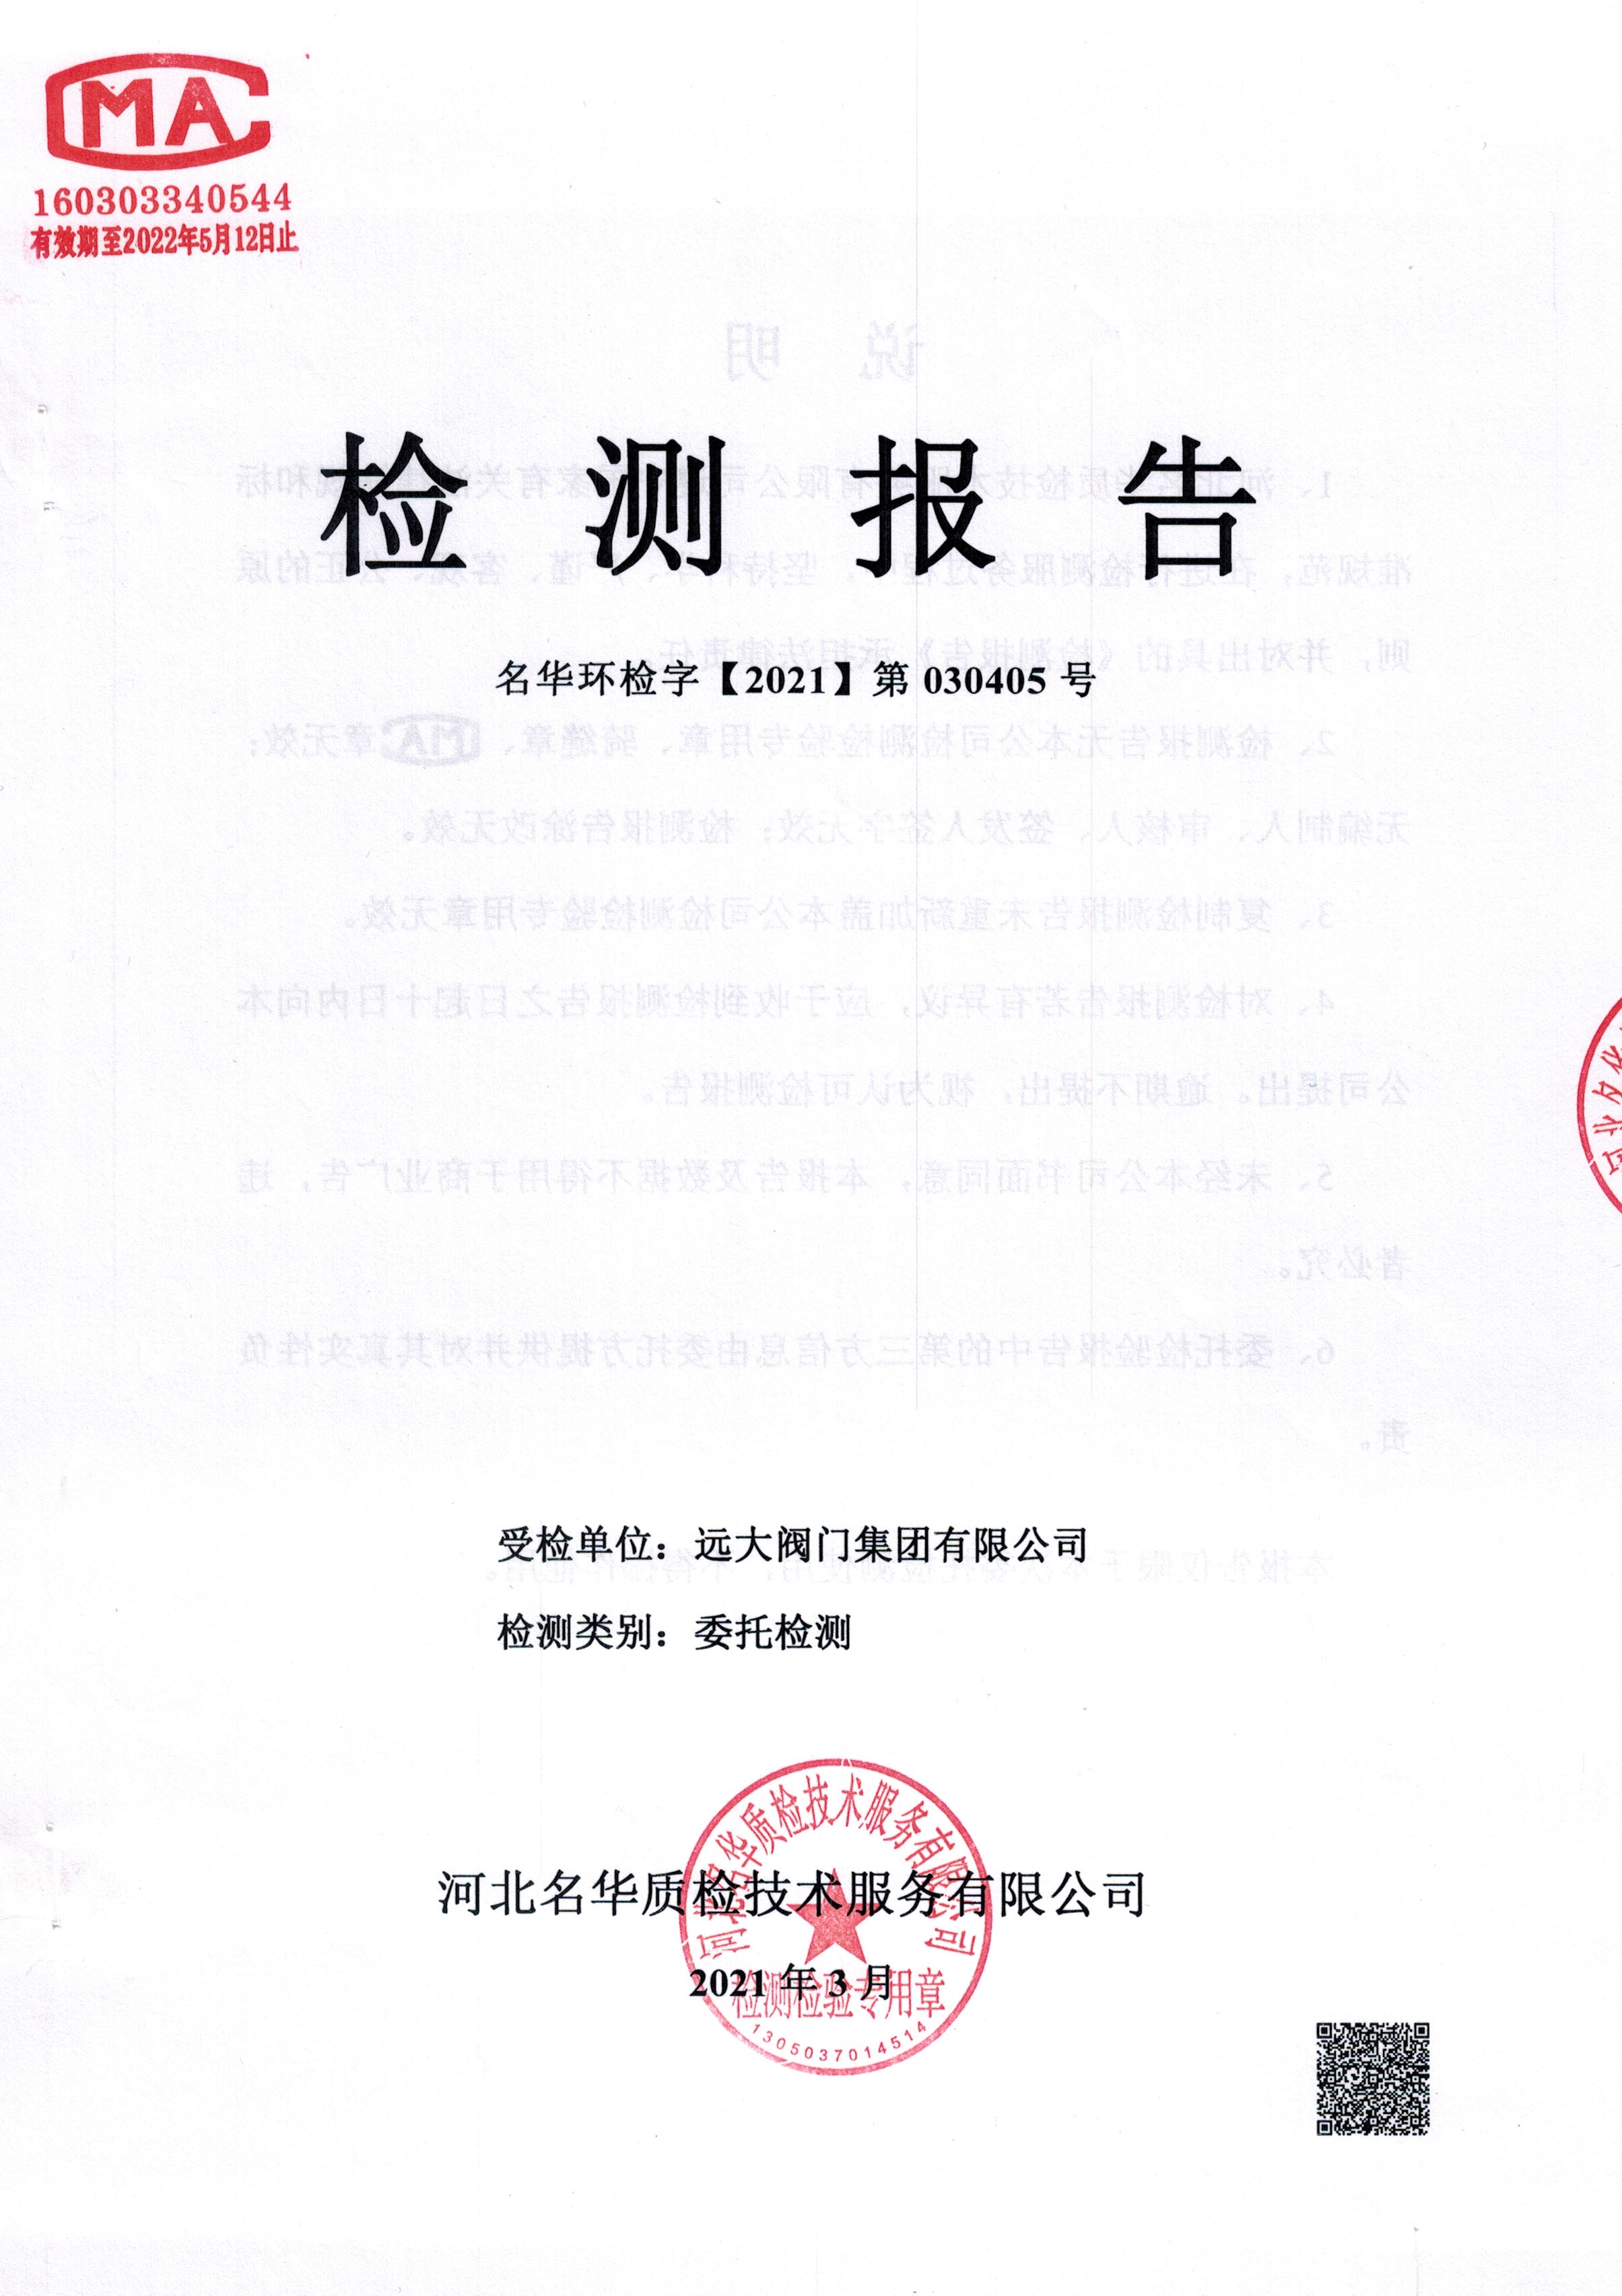 leyu乐鱼网页版注册录入口
第一季度锅炉检测+噪声检测报告